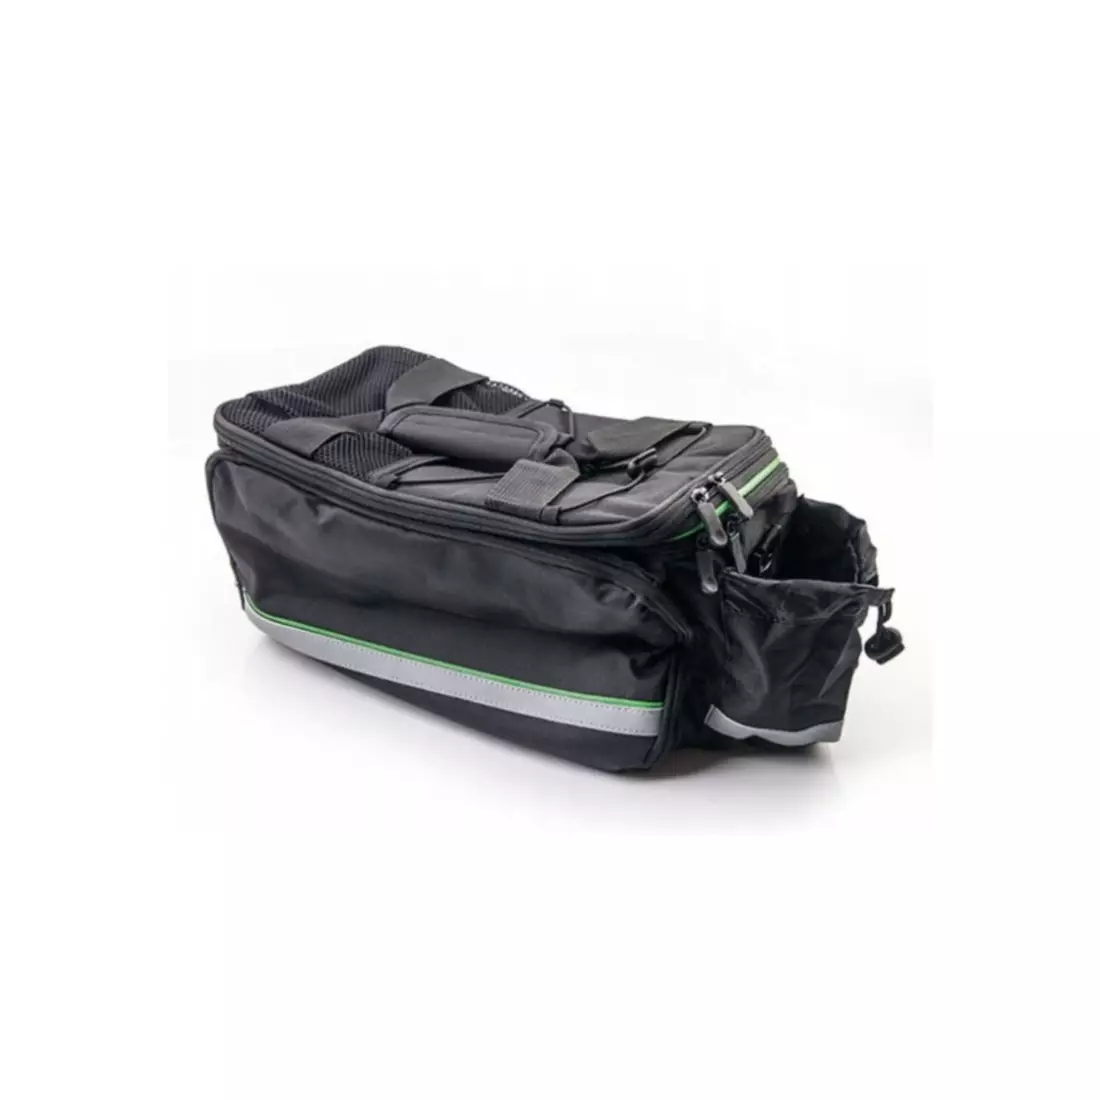 Fahrradtasche für den Kofferraum 20l, schwarz und grün